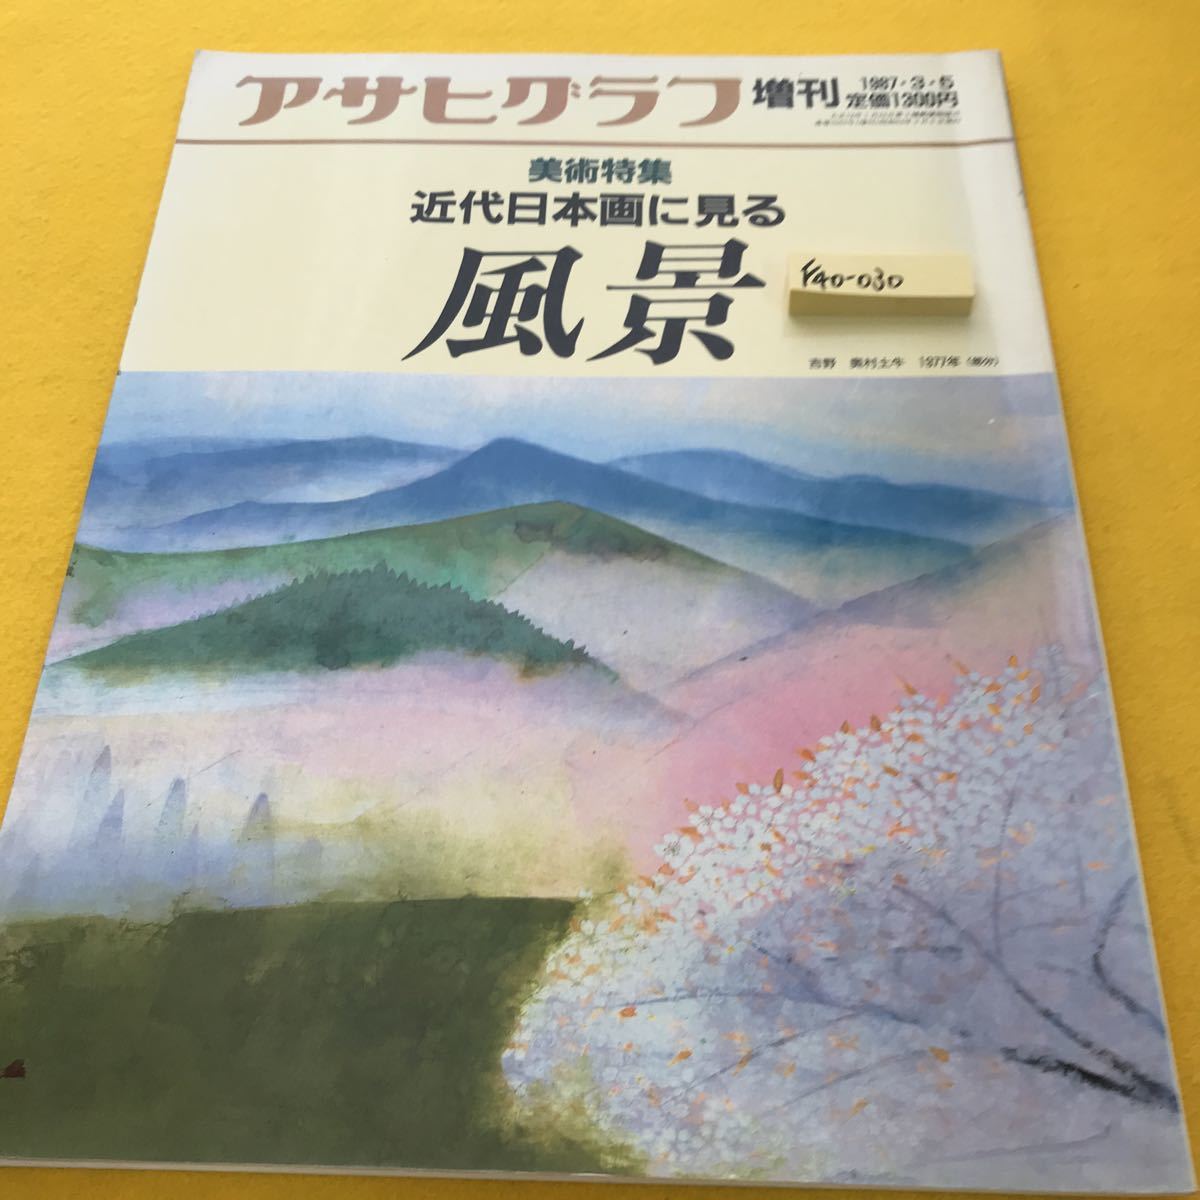 正規逆輸入品】 F40-030 アサヒグラフ 朝日新聞社 近代日本画に見る